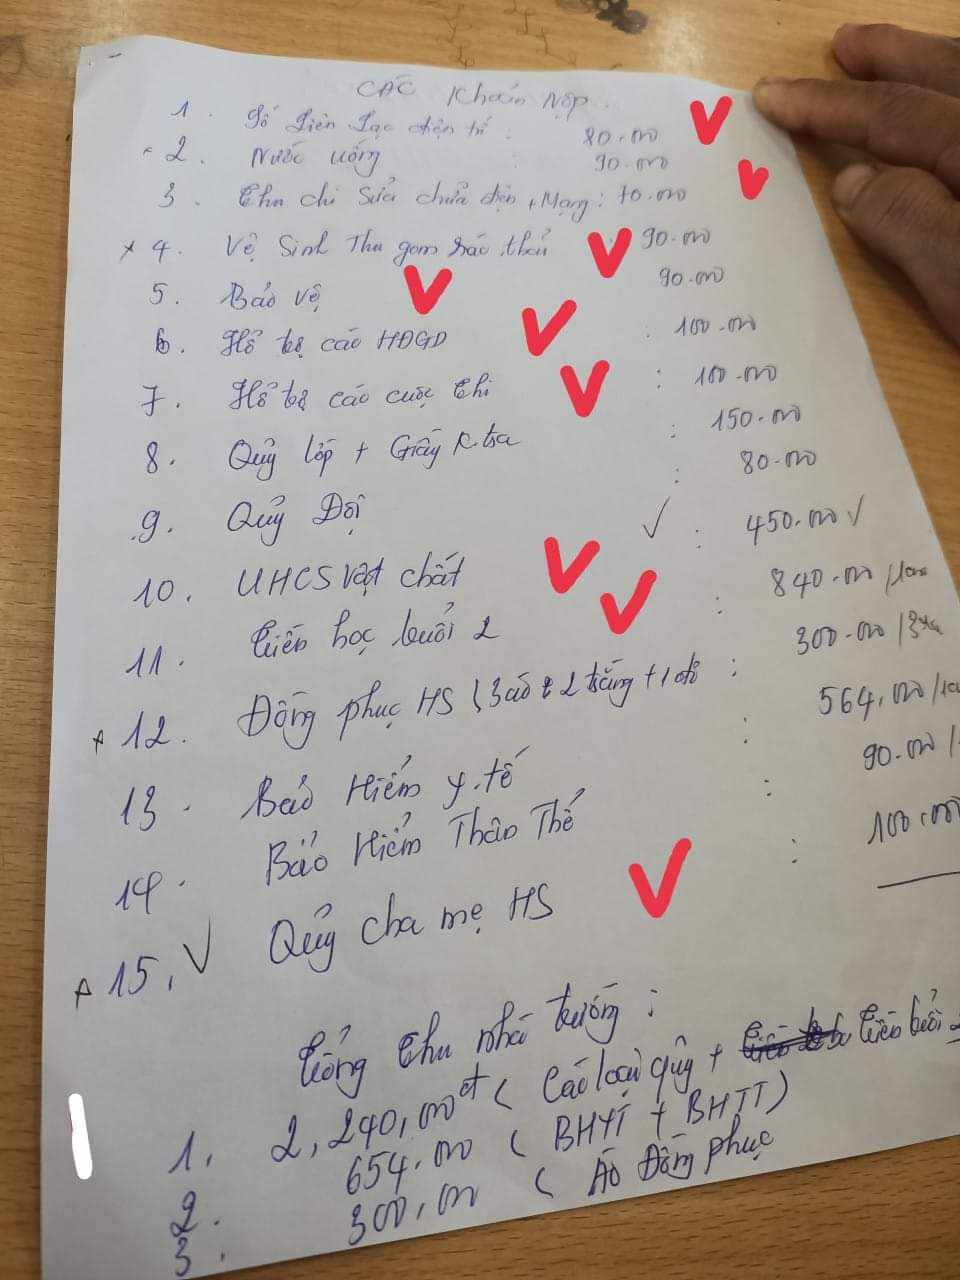 Phụ huynh liệt kê các khoản thu sai của trường Tiểu học xã Văn Luông (đâu tích màu đỏ). Ảnh do người dân cung cấp.